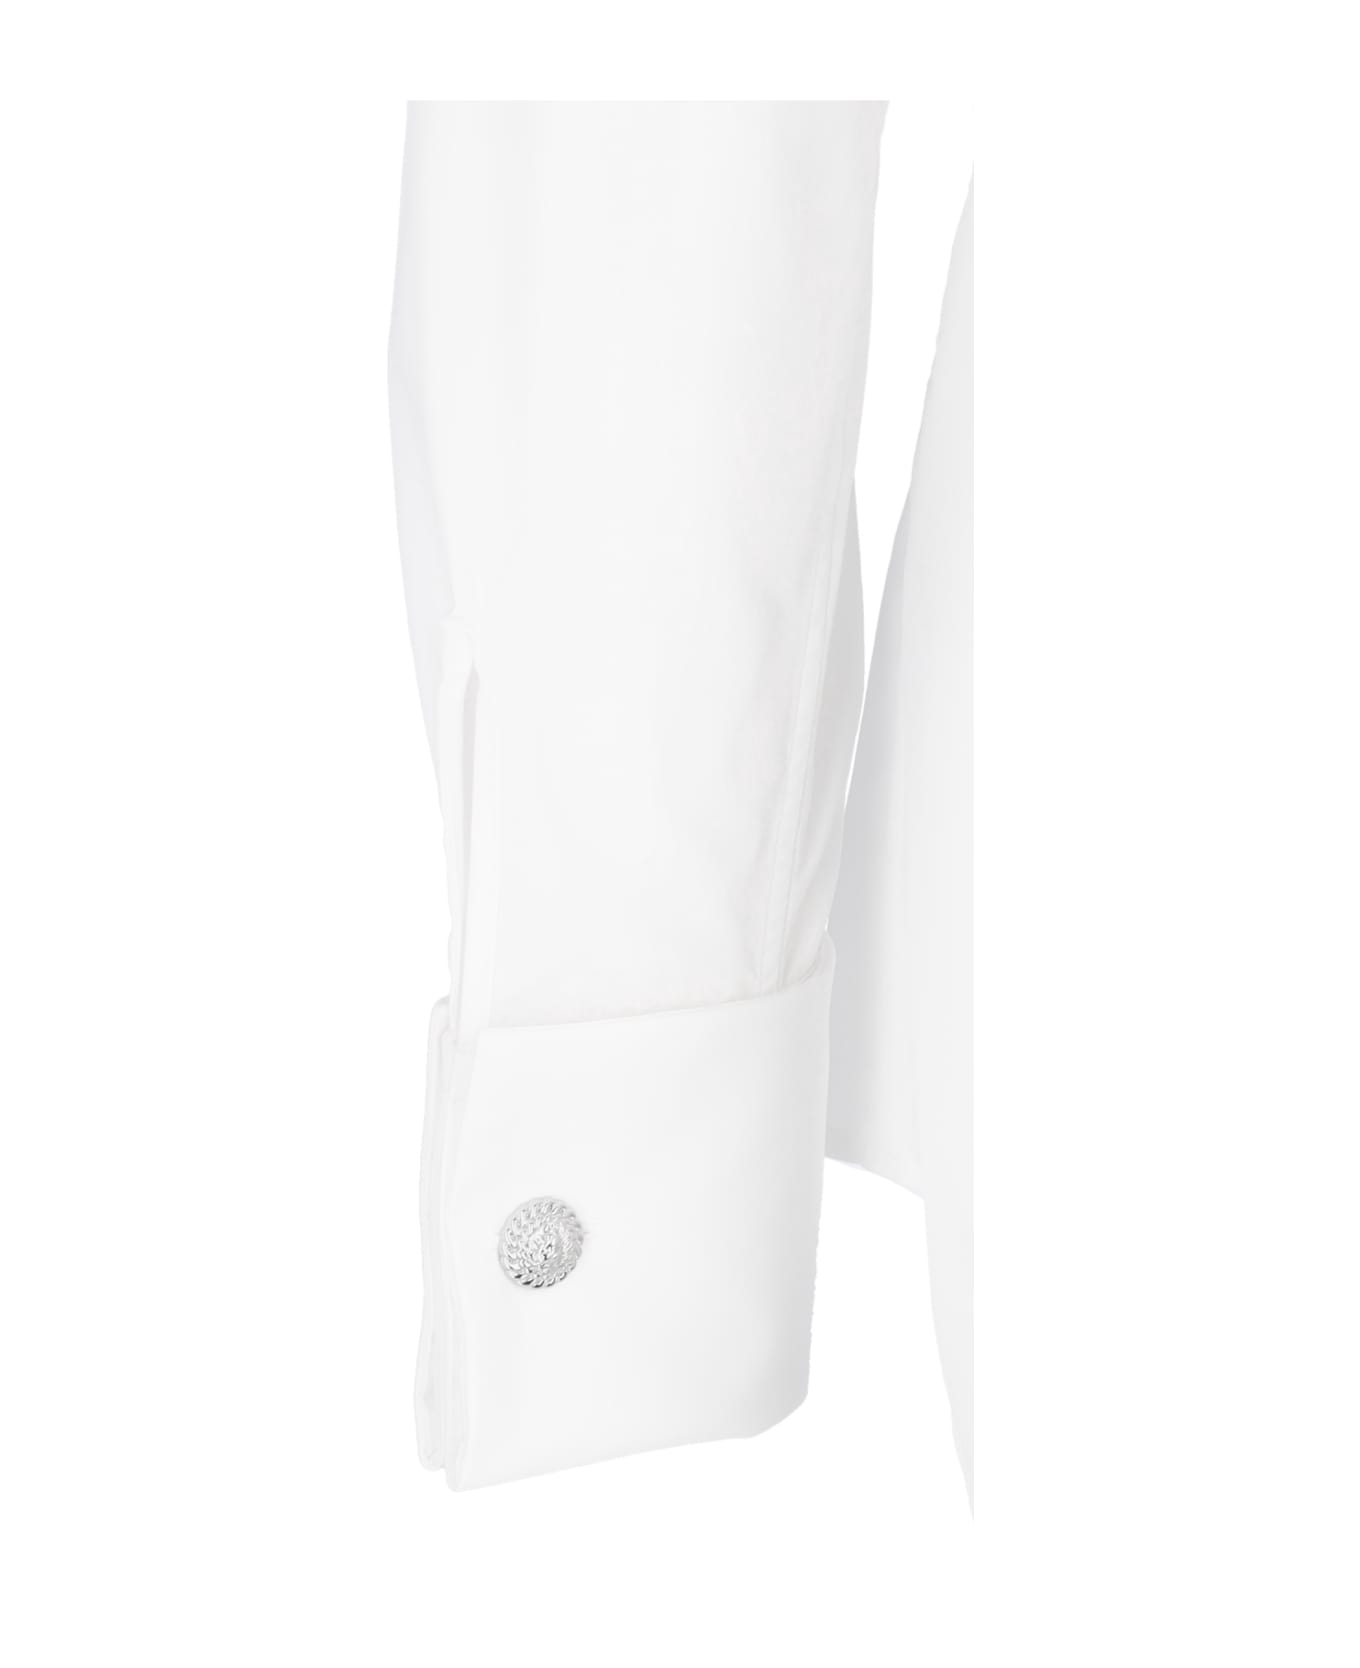 Balmain Poplin Shirt - Bianco